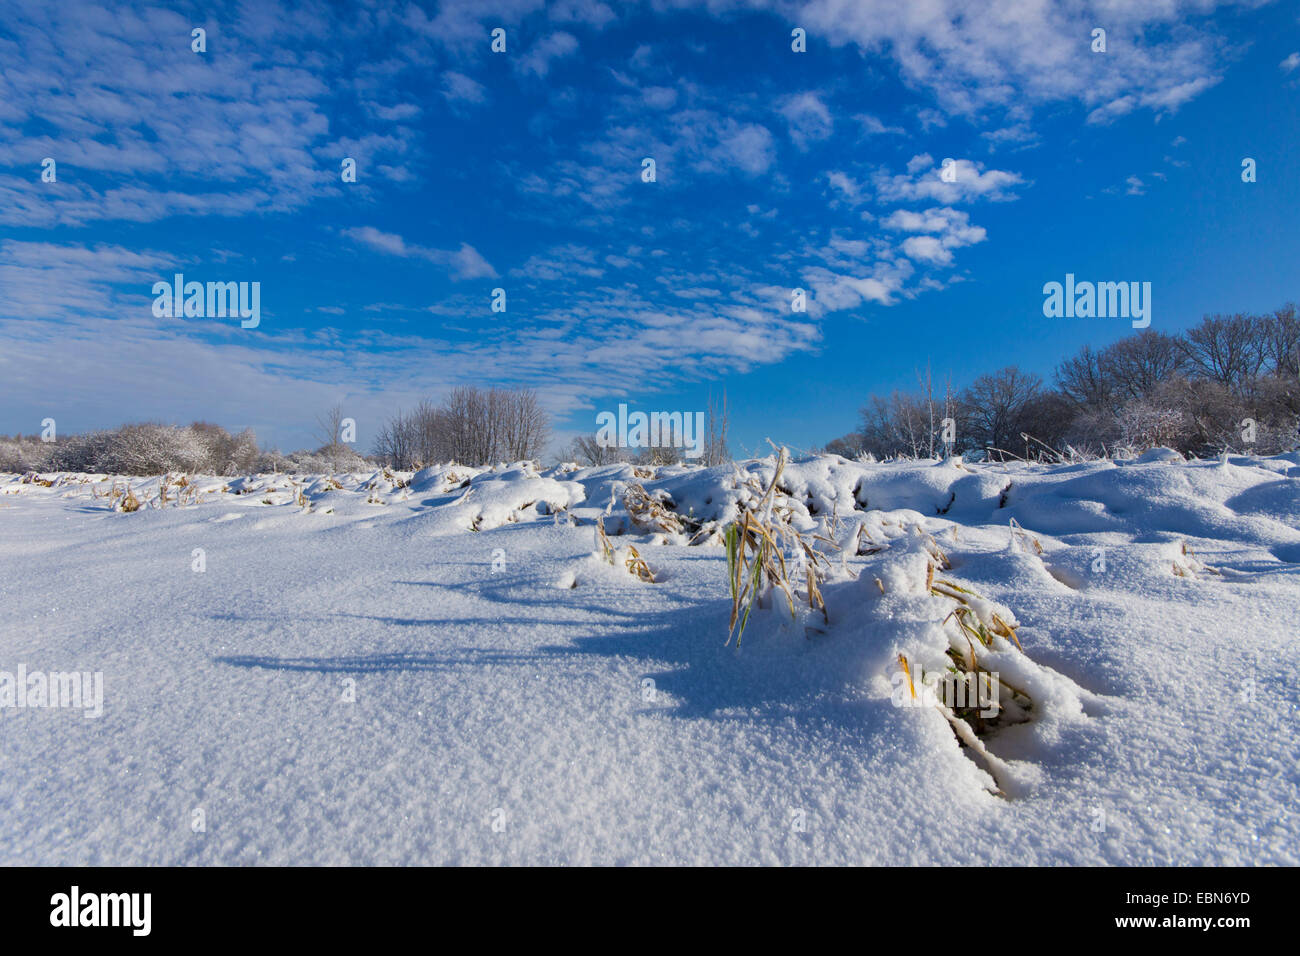 snow covered field scenery, Germany, Saxony, Jocketa Stock Photo